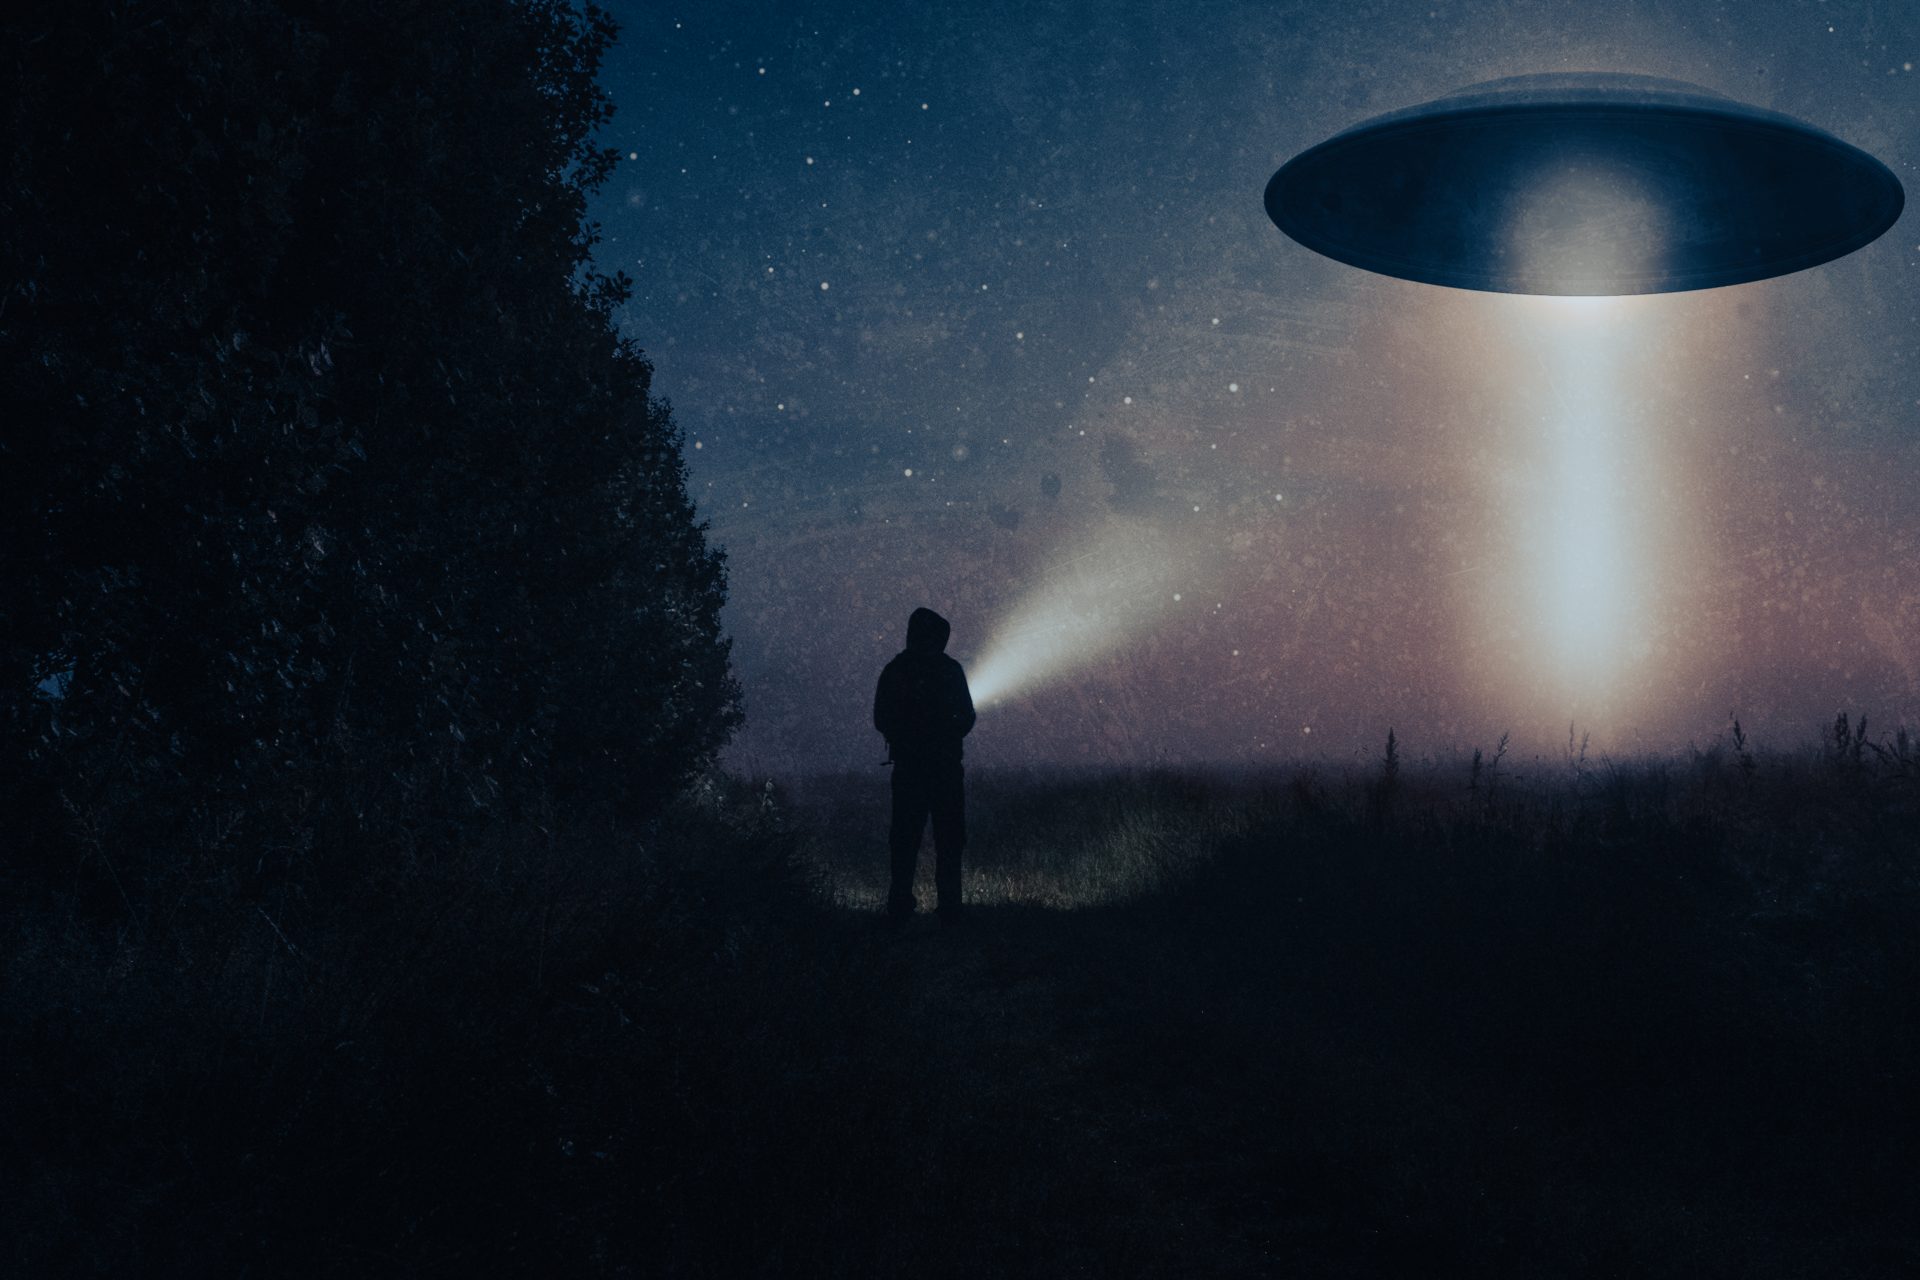 The Fermi Paradox: Where are all the aliens?